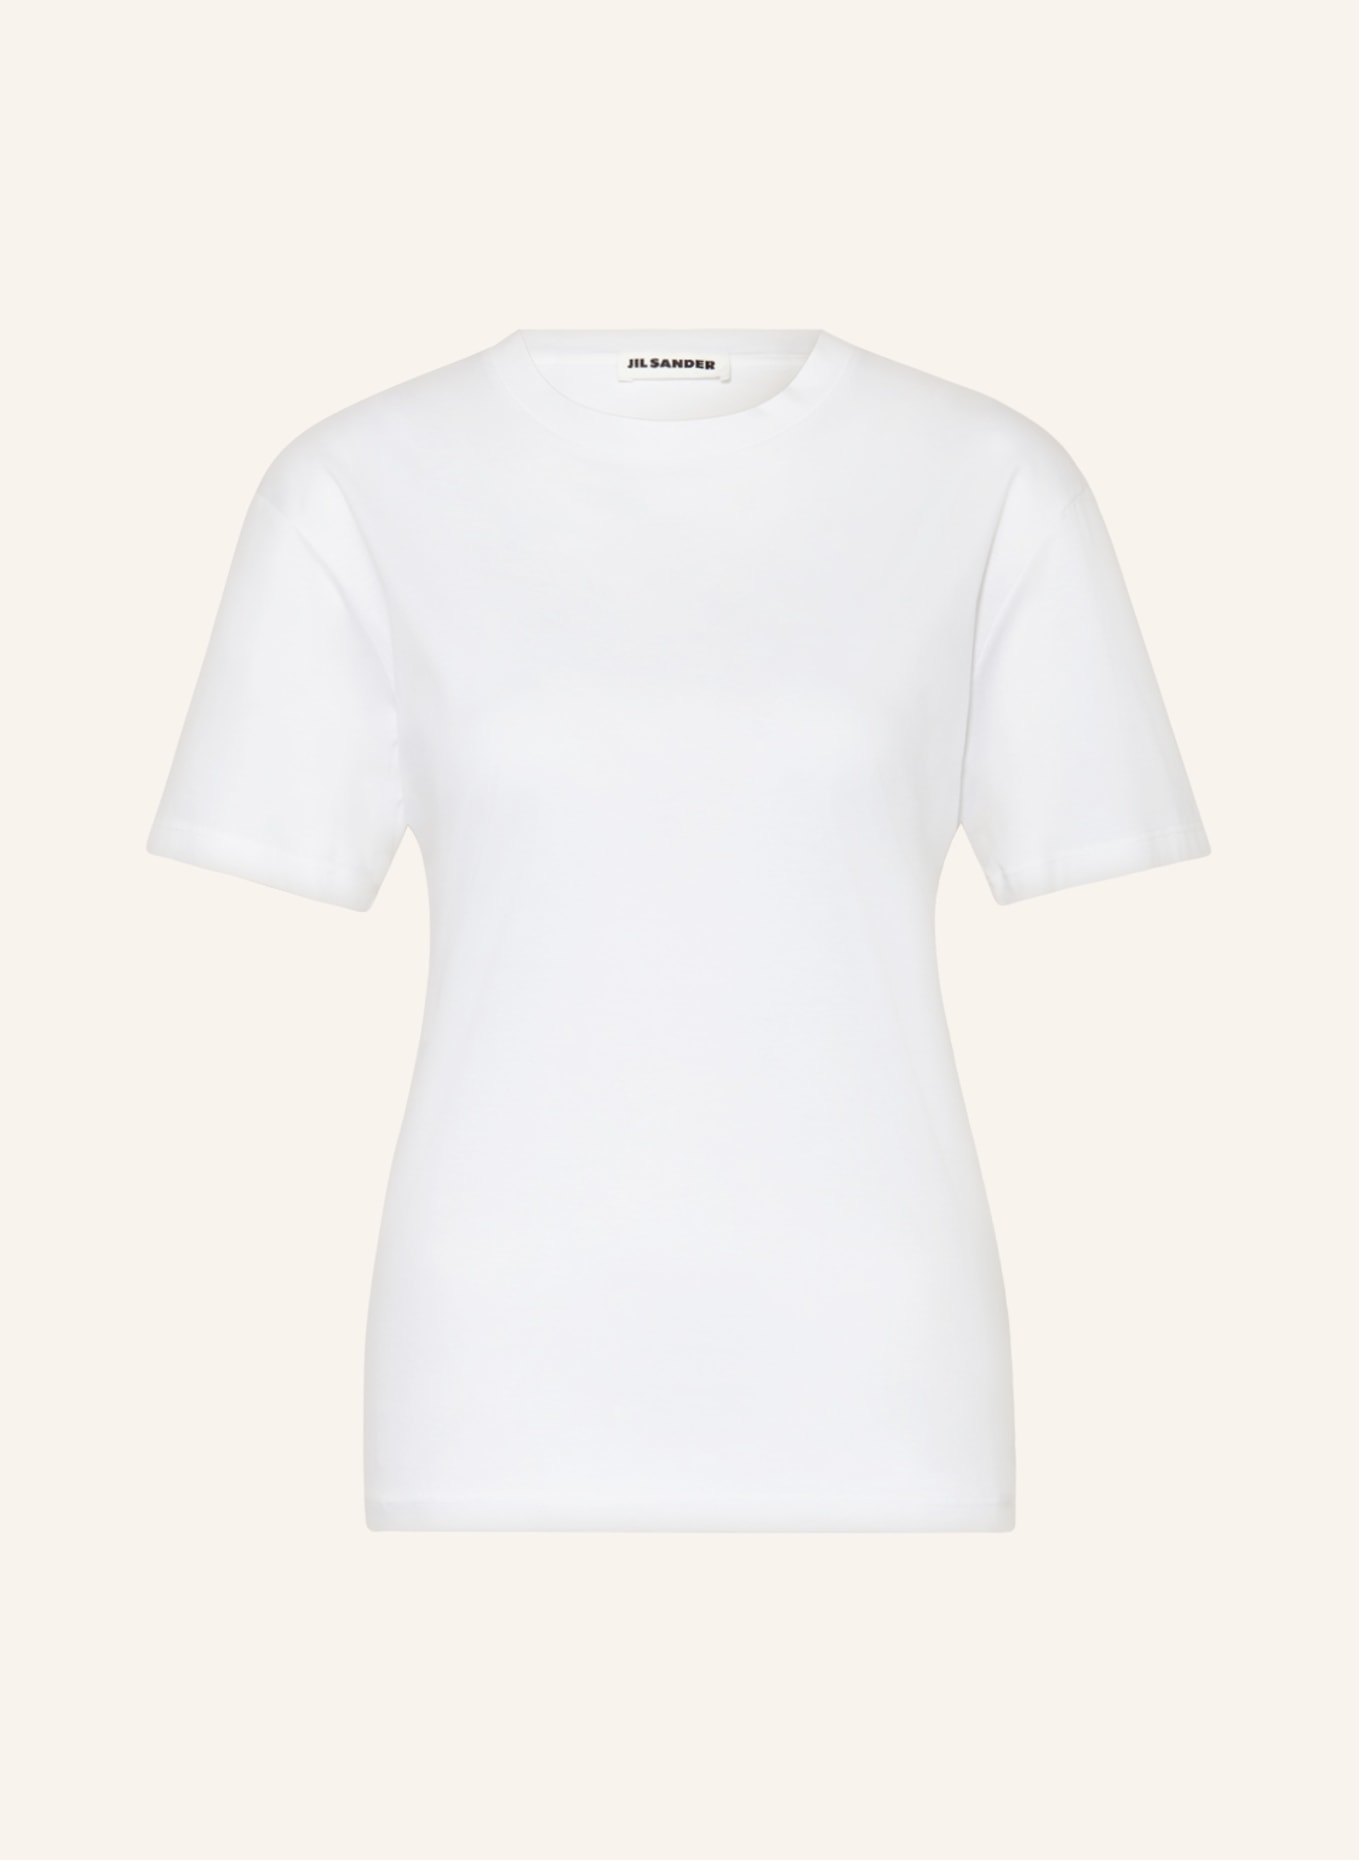 JIL SANDER T-Shirt, Farbe: WEISS (Bild 1)